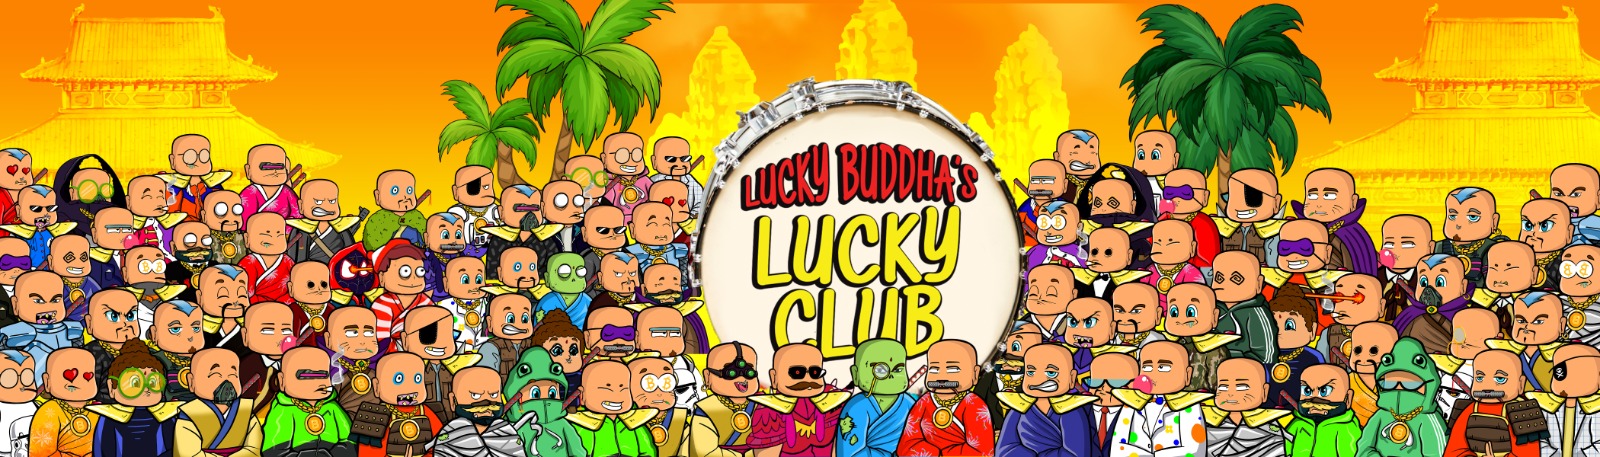 Lucky Buddha Lucky Club